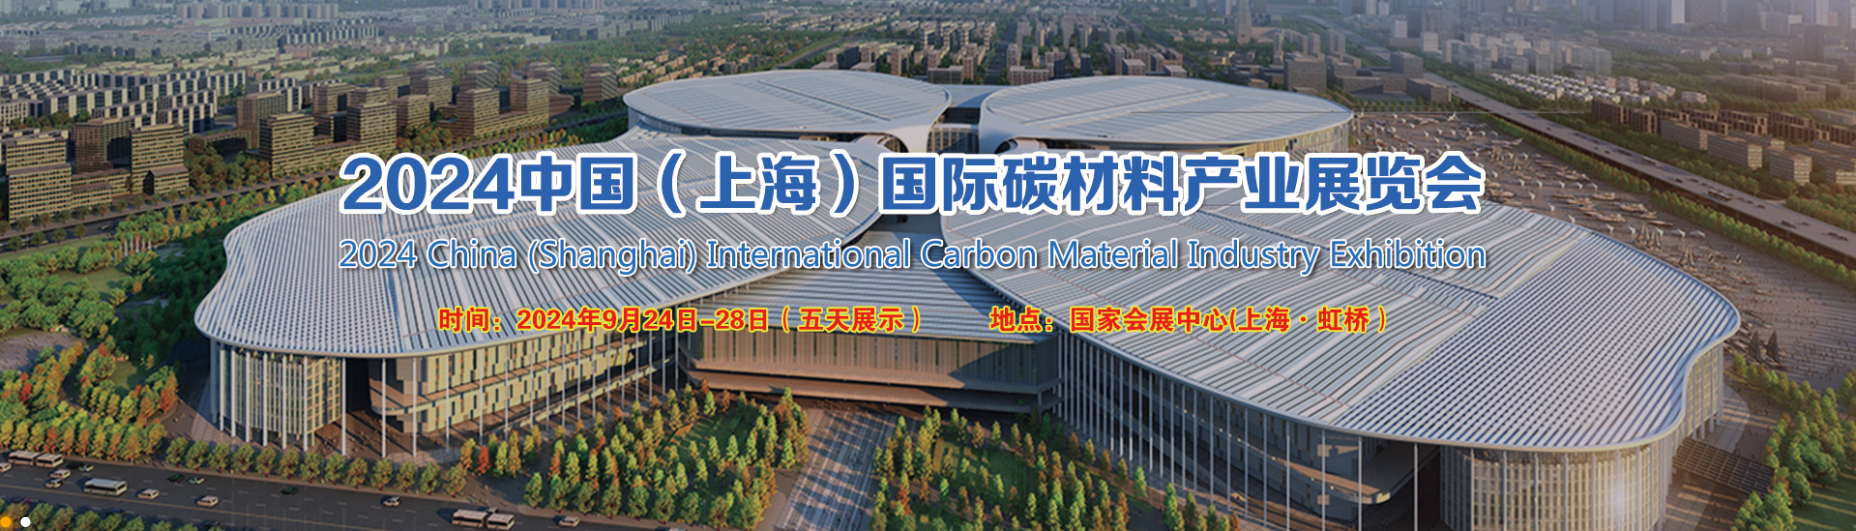 Exposição Internacional da Indústria de Materiais de Carbono da China (Xangai) 2024